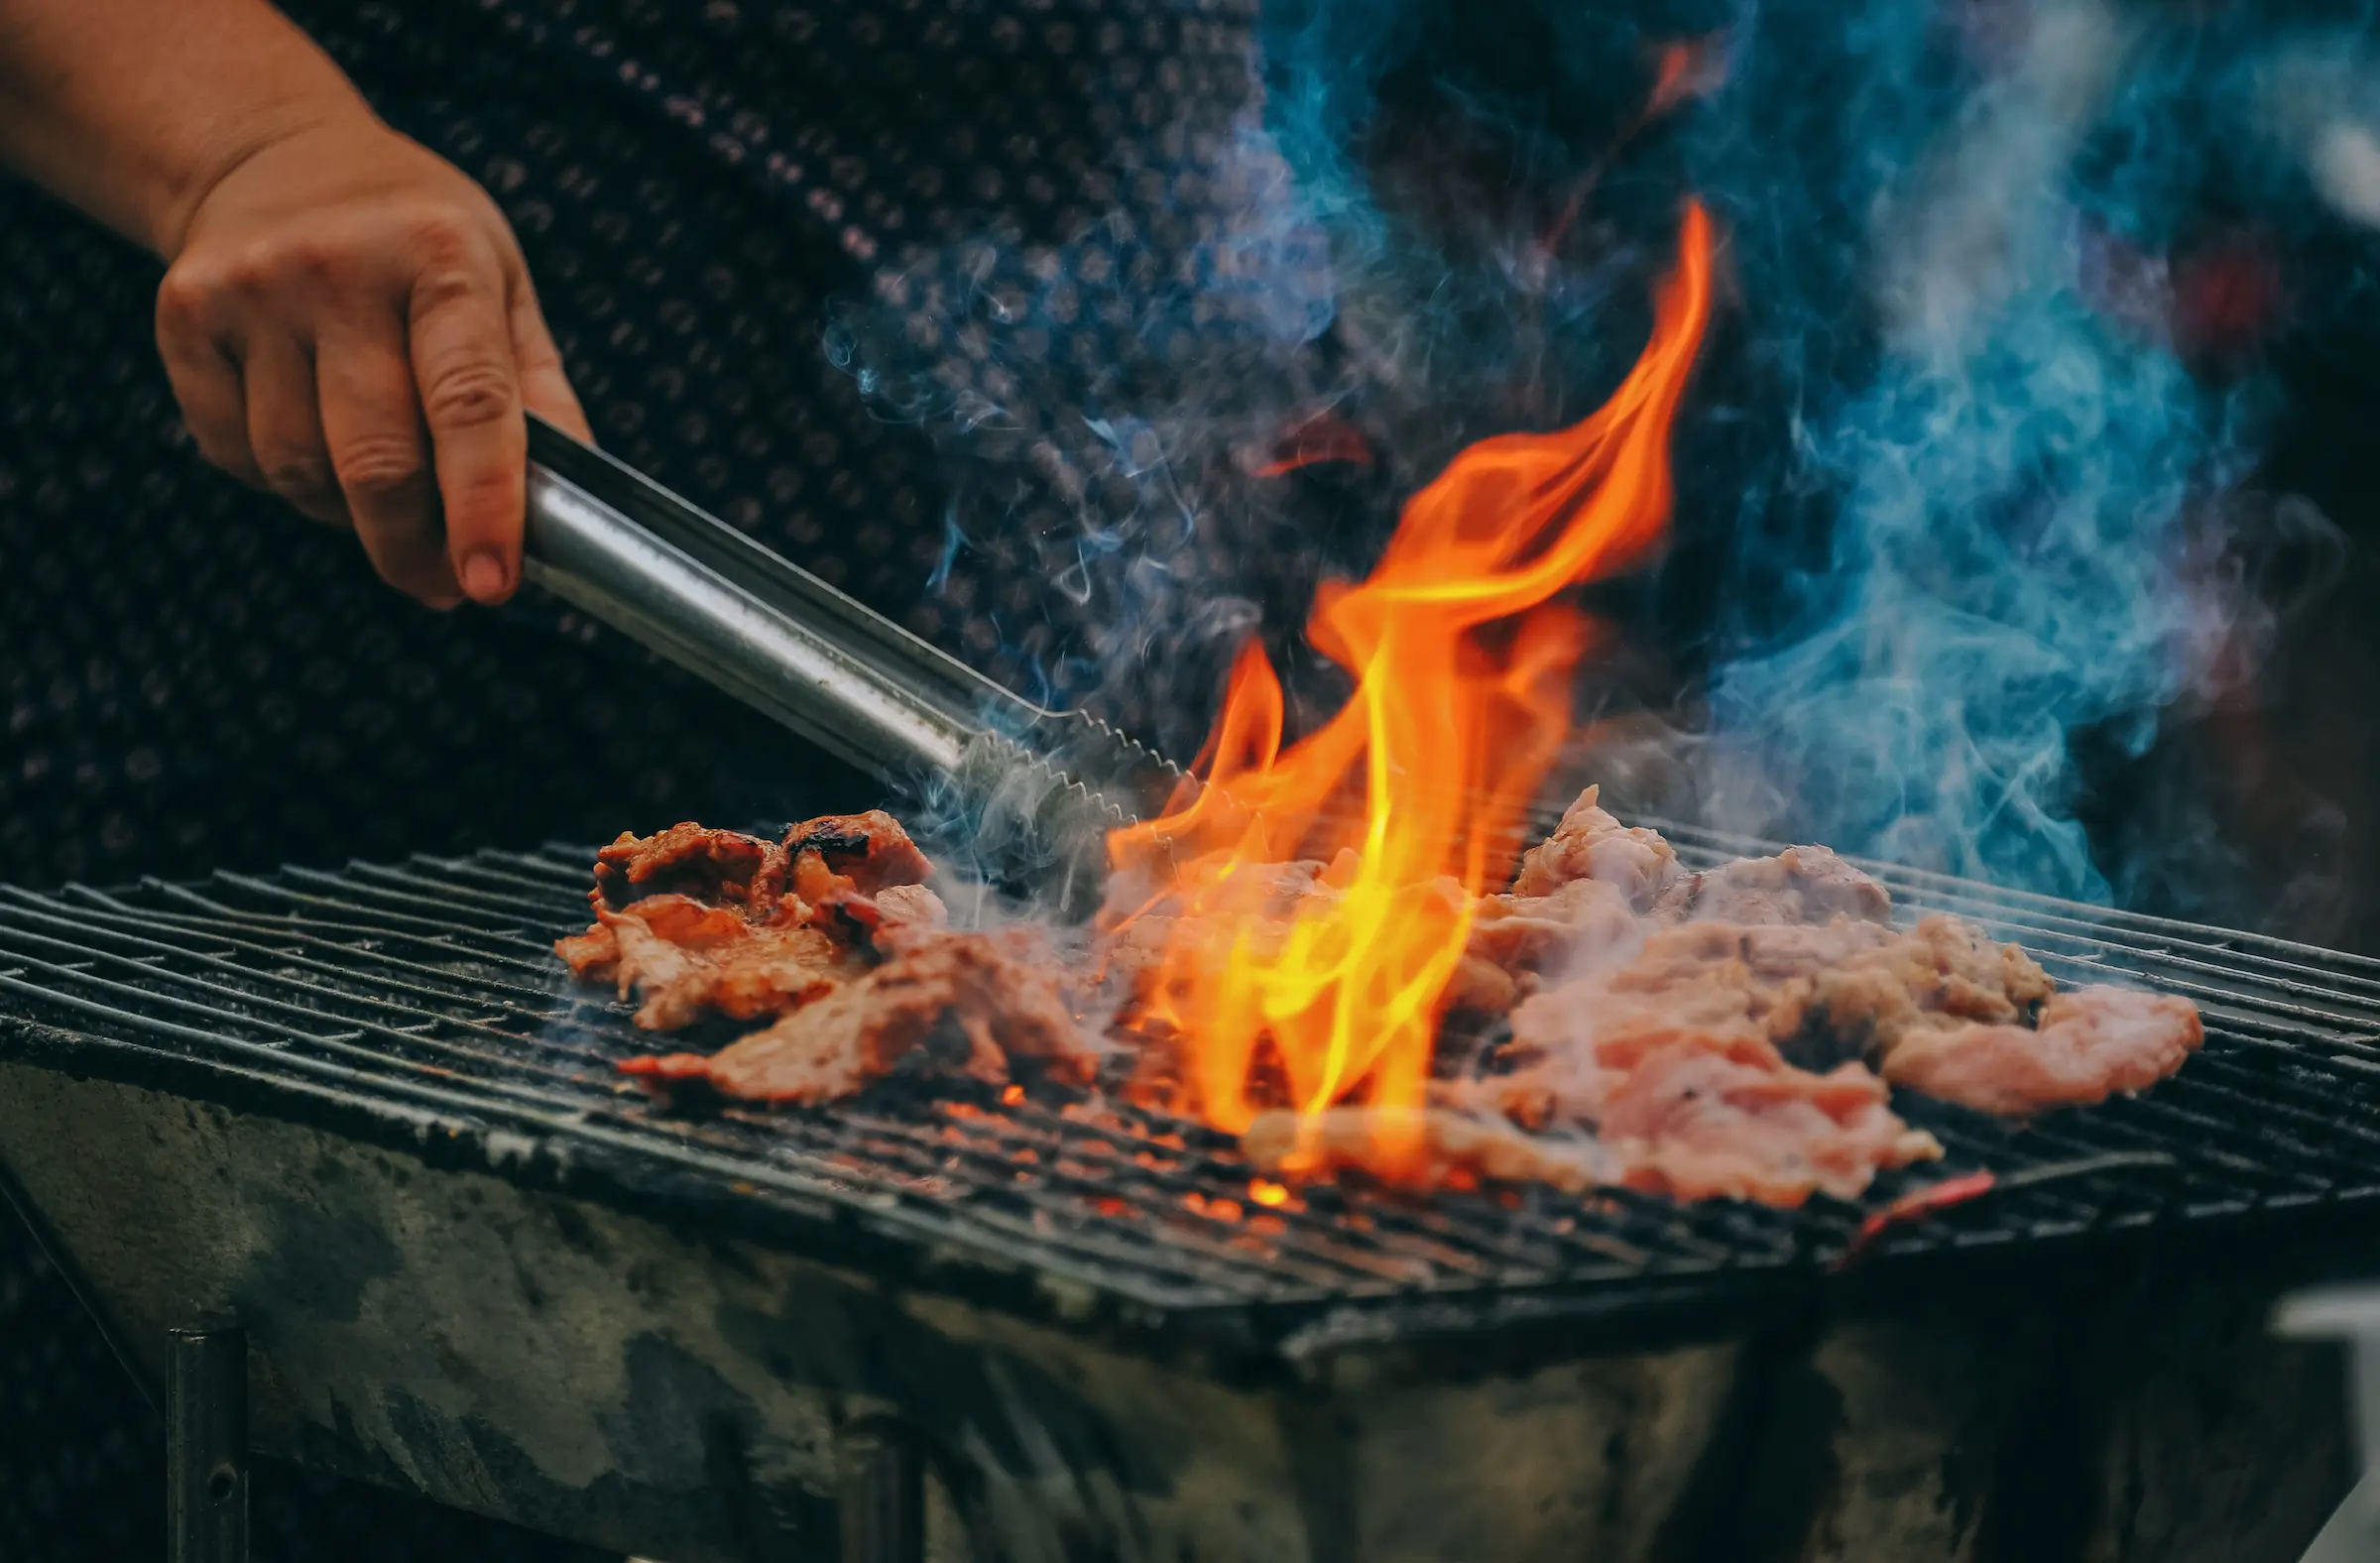 En hånd med en grillklype som tar i kjøtt over en åpen flamme på grillen.